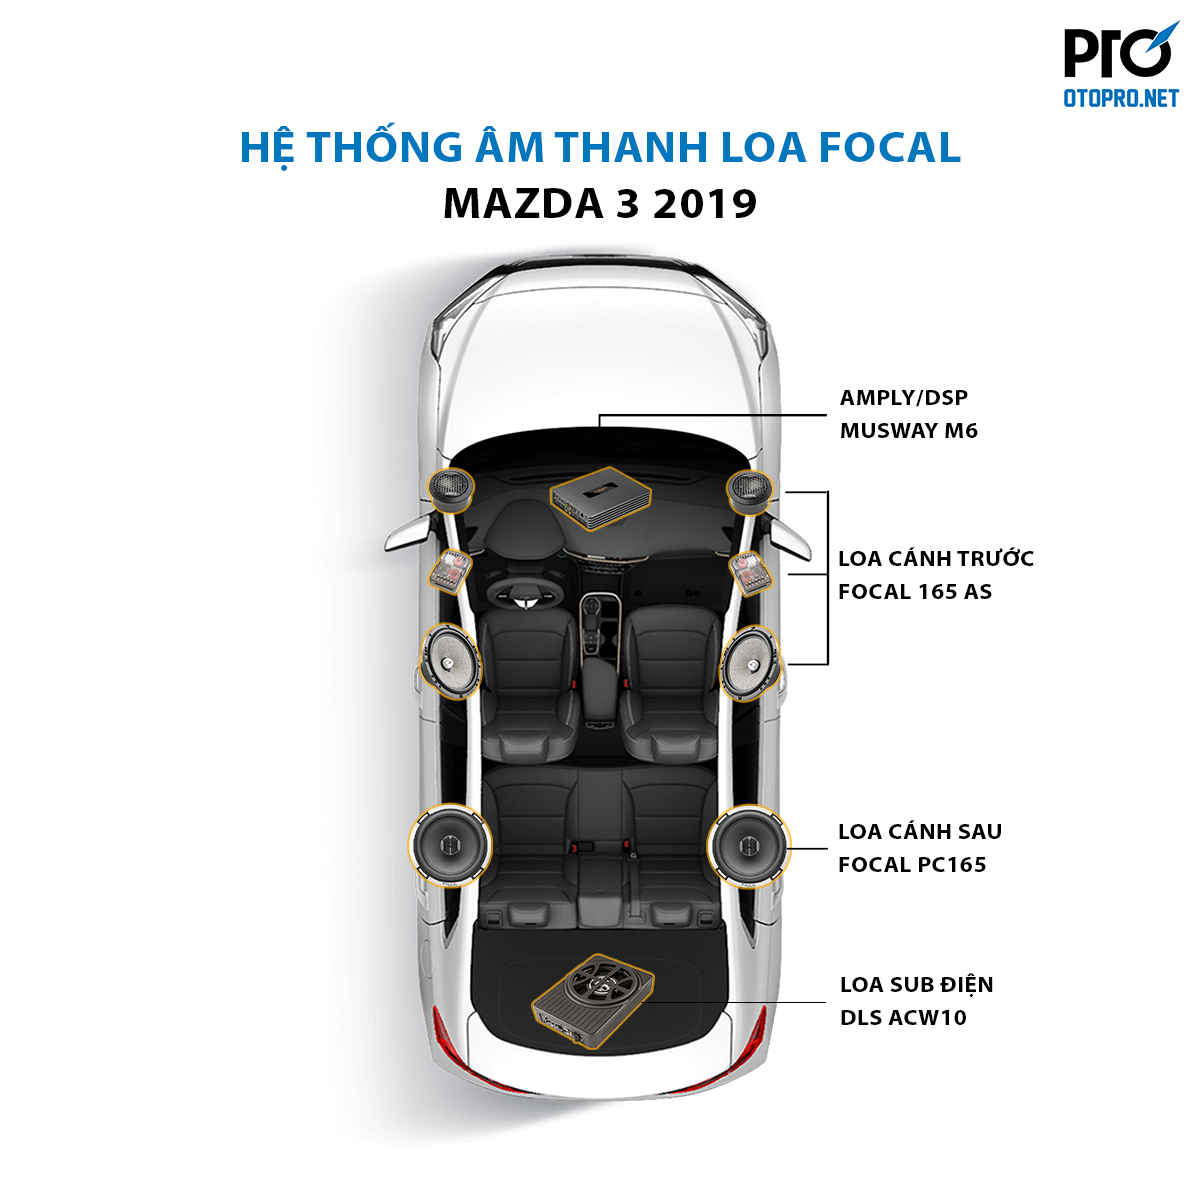 Độ loa Mazda 3 2019 với cấu hình âm thanh loa Focal 165 AS